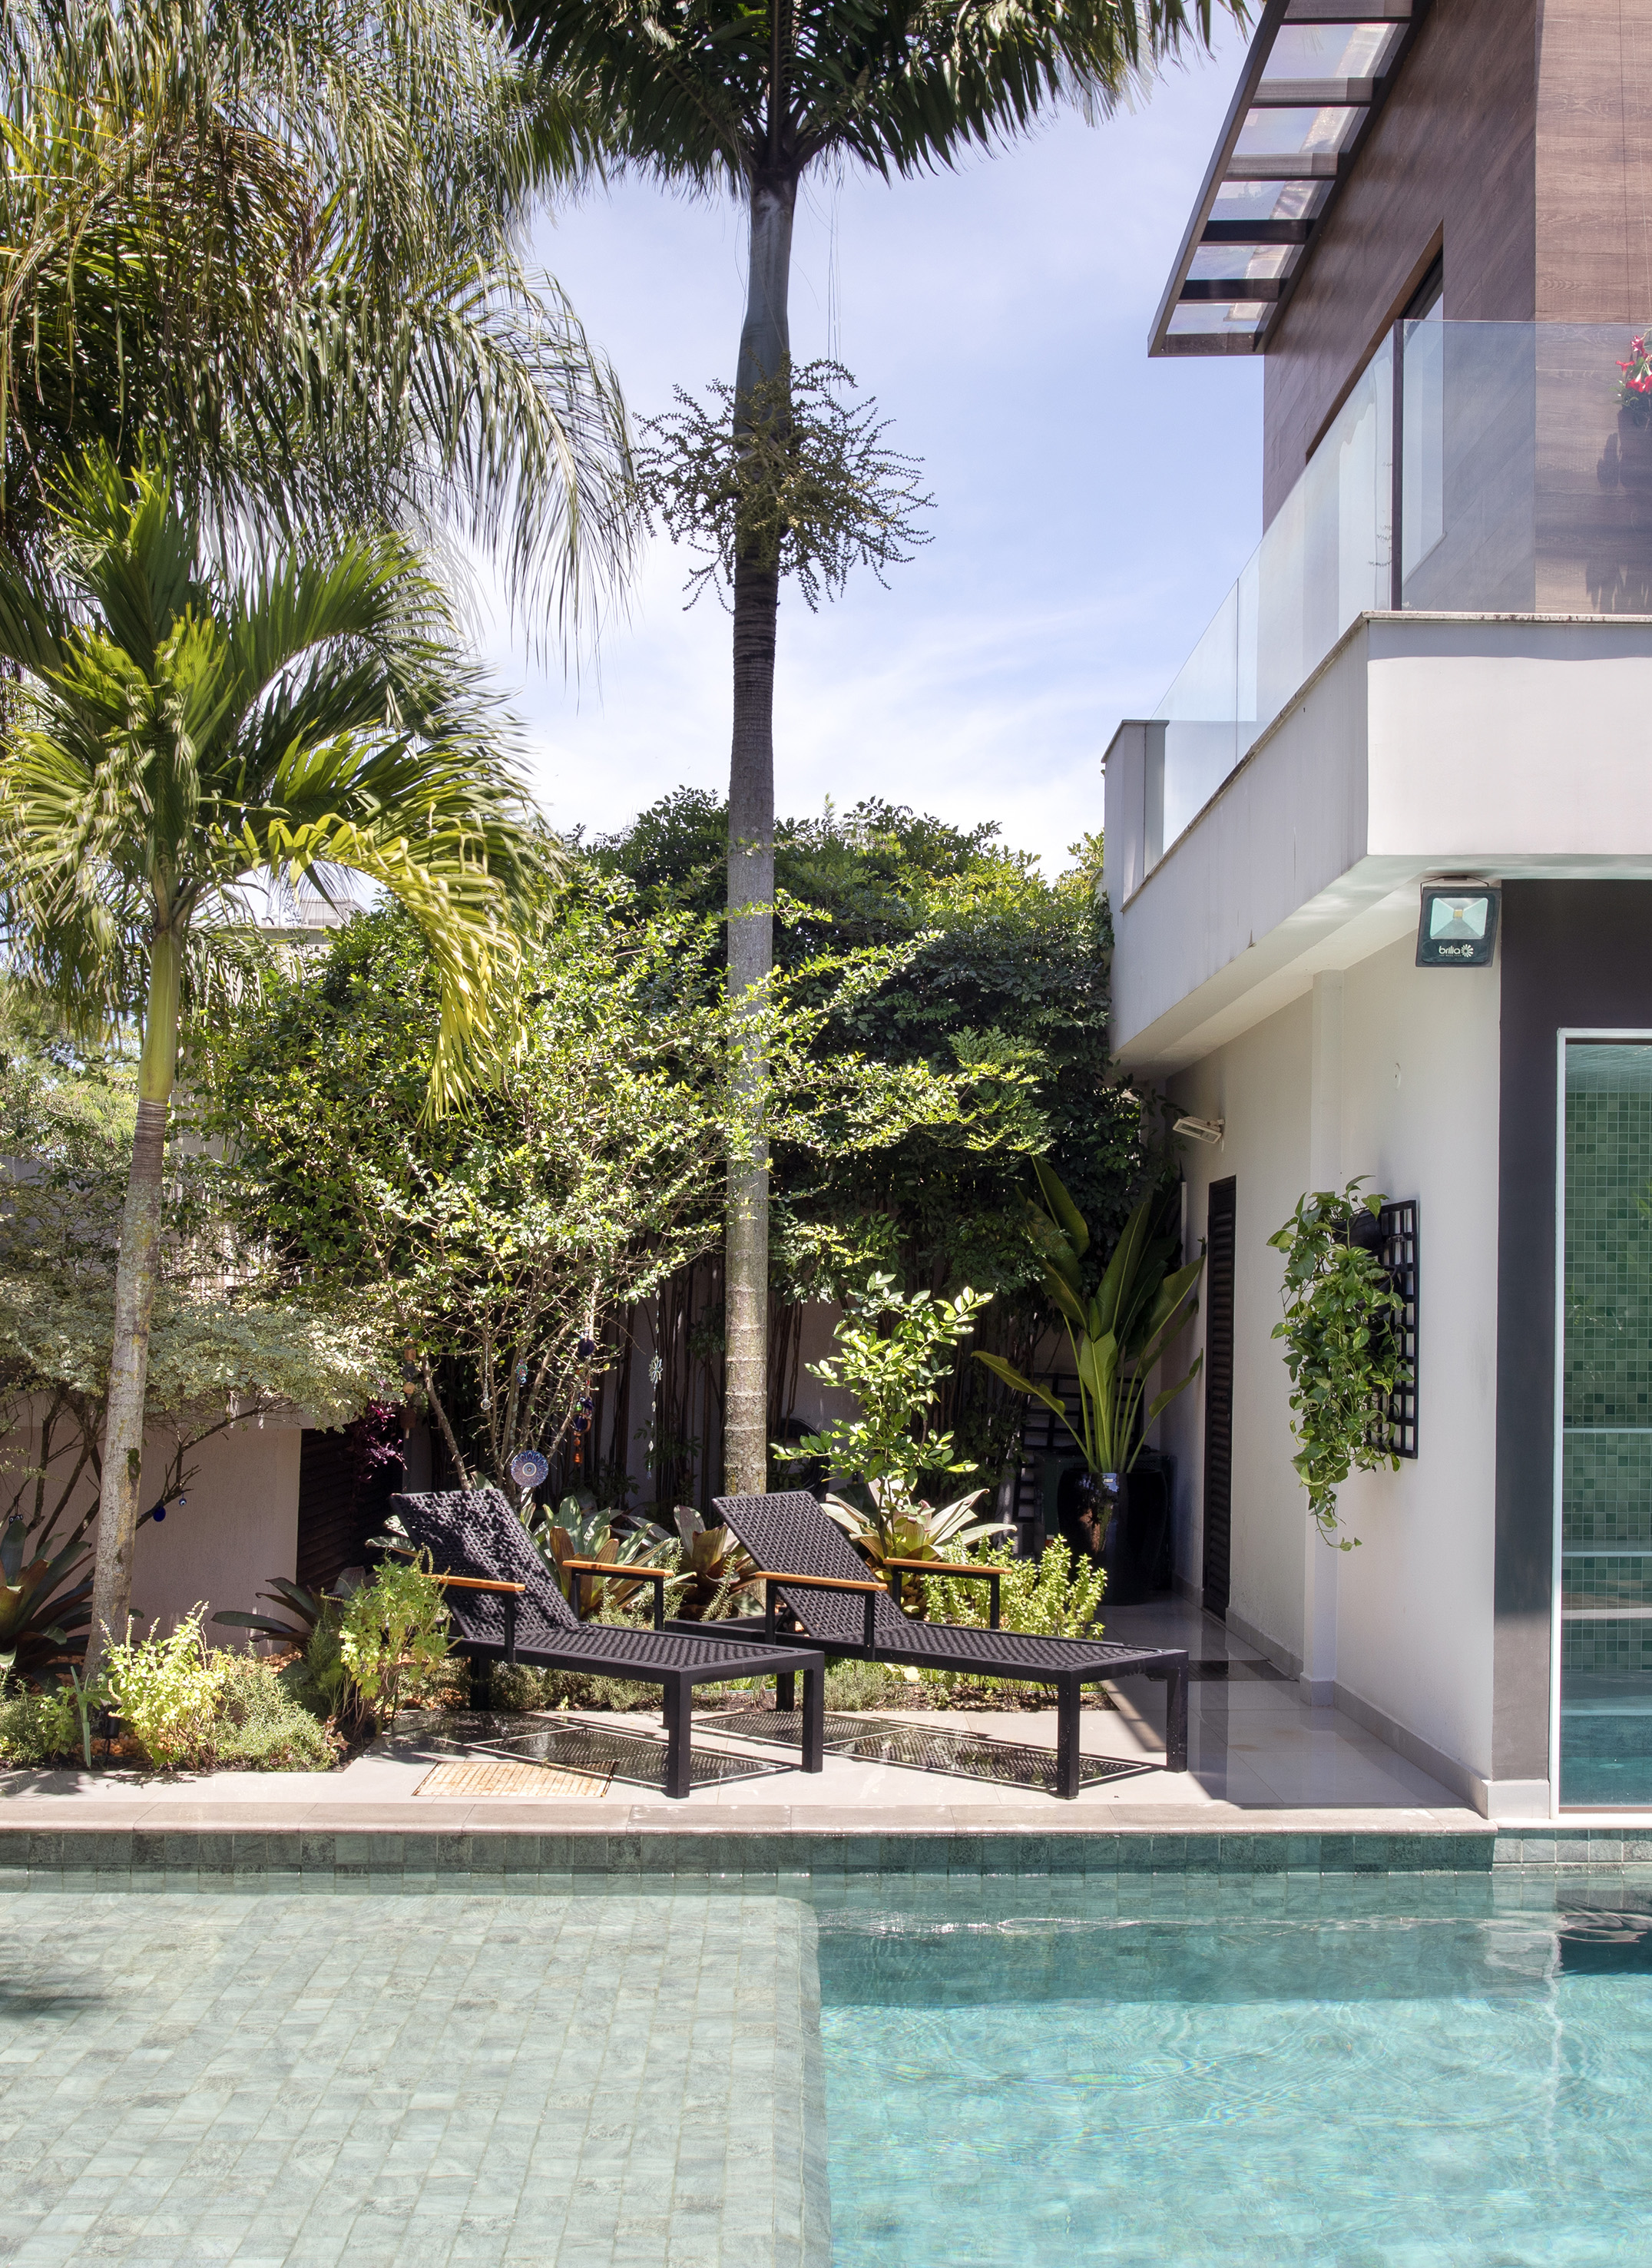 Paisagismo tropical: jardim tem bromélias, palmeiras e jardim vertical. Paisagismo de Horto Girassol. Na foto, jardim, piscina, palmeira.